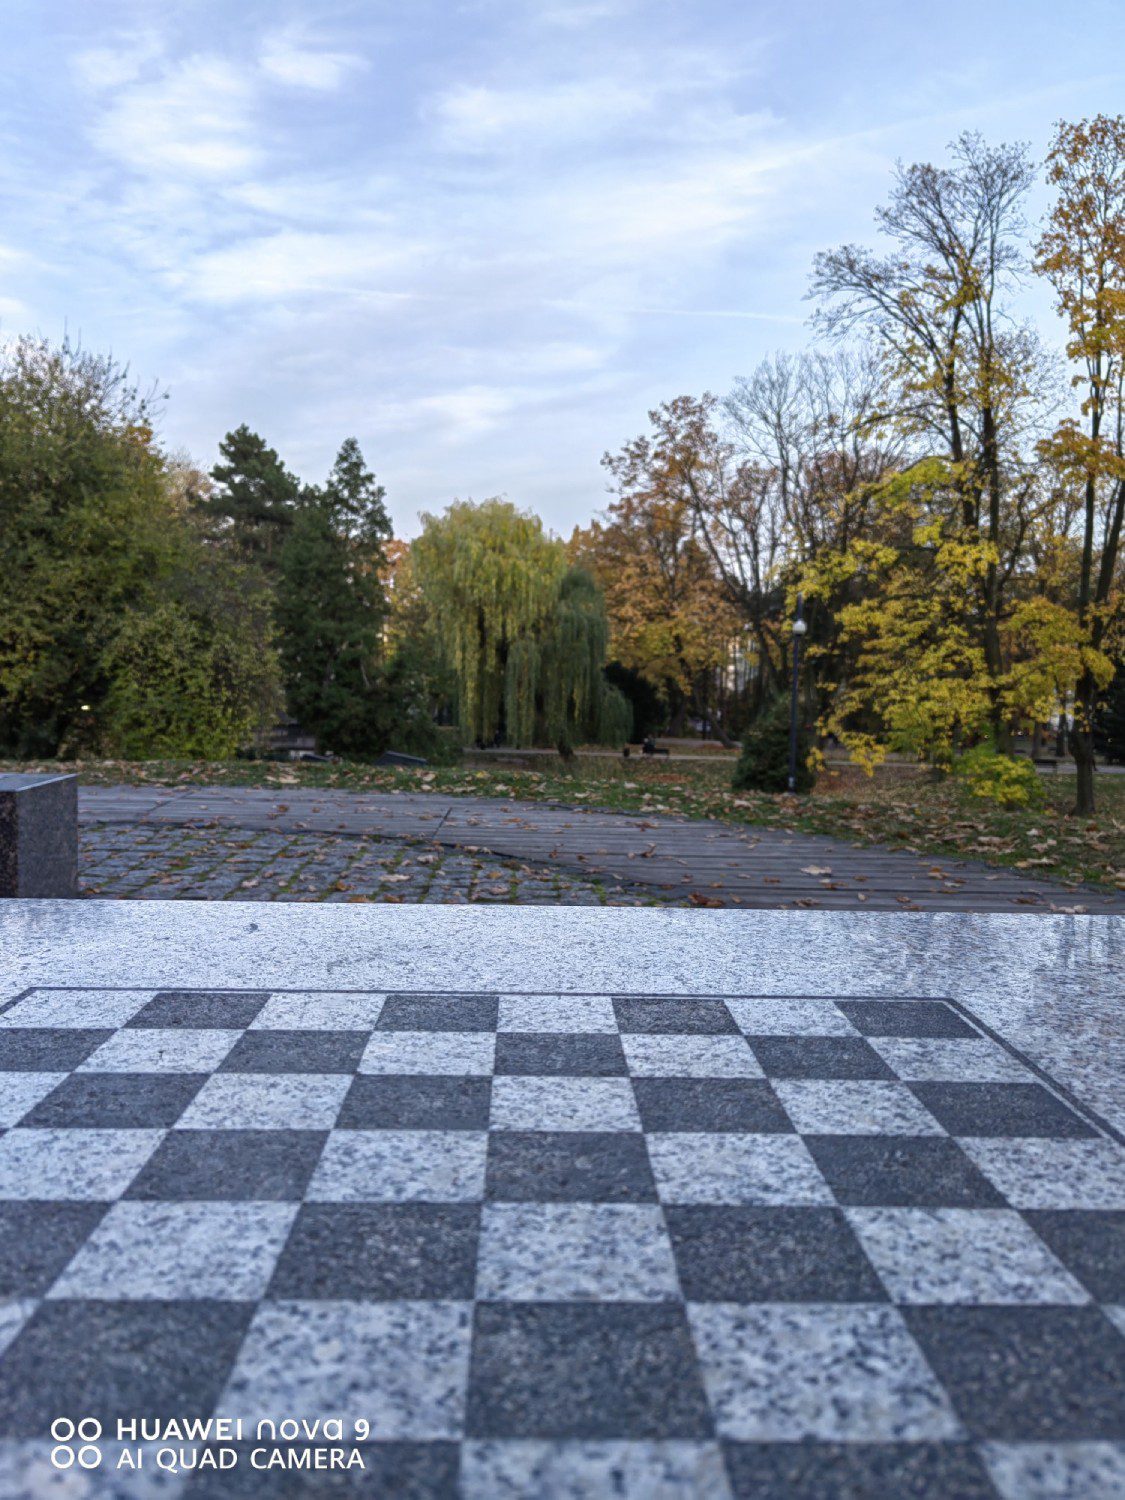 krajobraz z szachownicą zdjęcie huaweiem nova 9